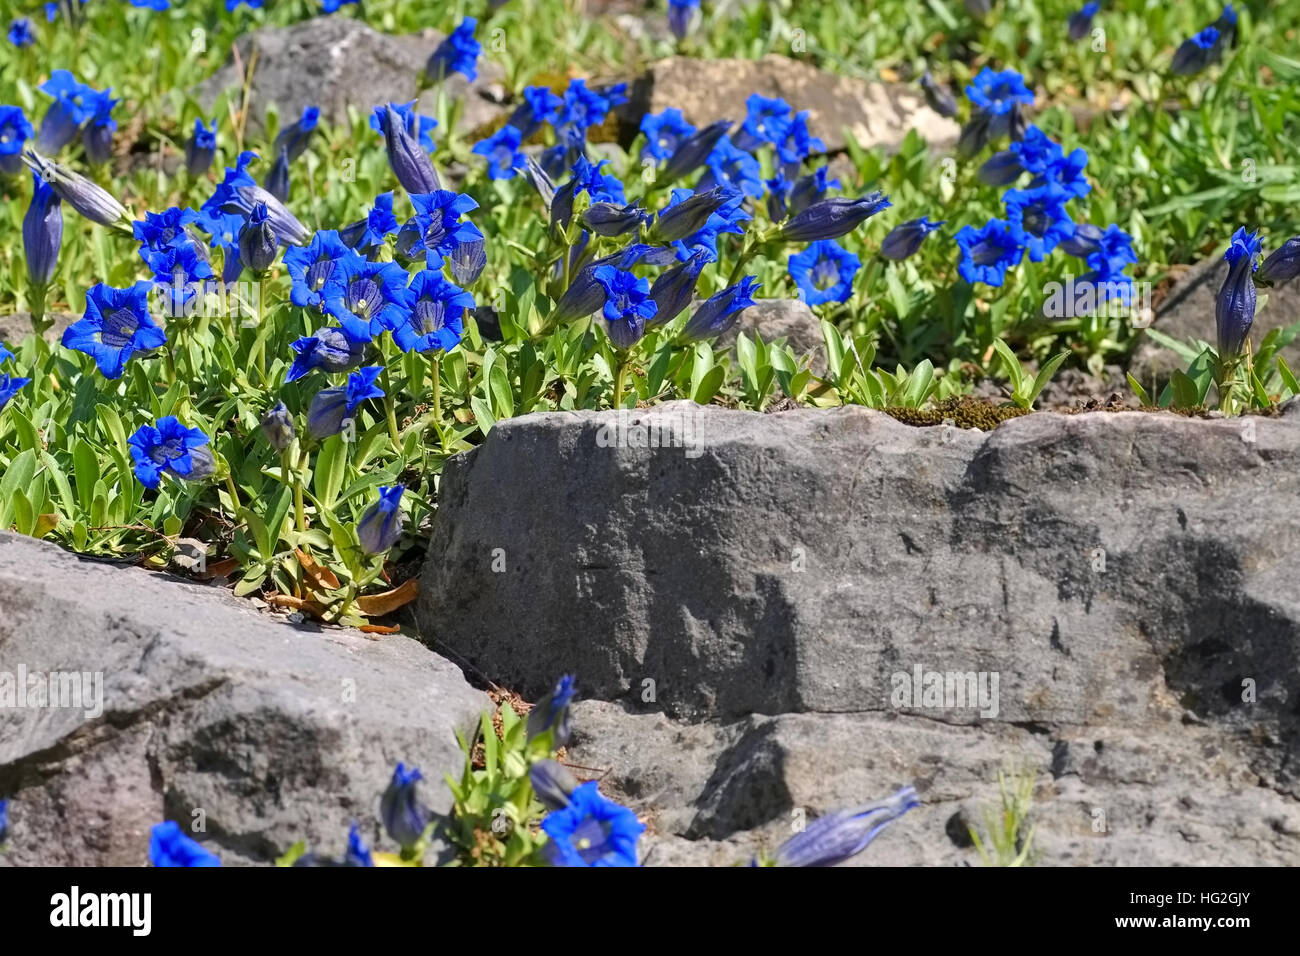 Kochscher Enzian oder Gentiana acaulis - stemless gentian or Gentiana acaulis flower in spring Stock Photo